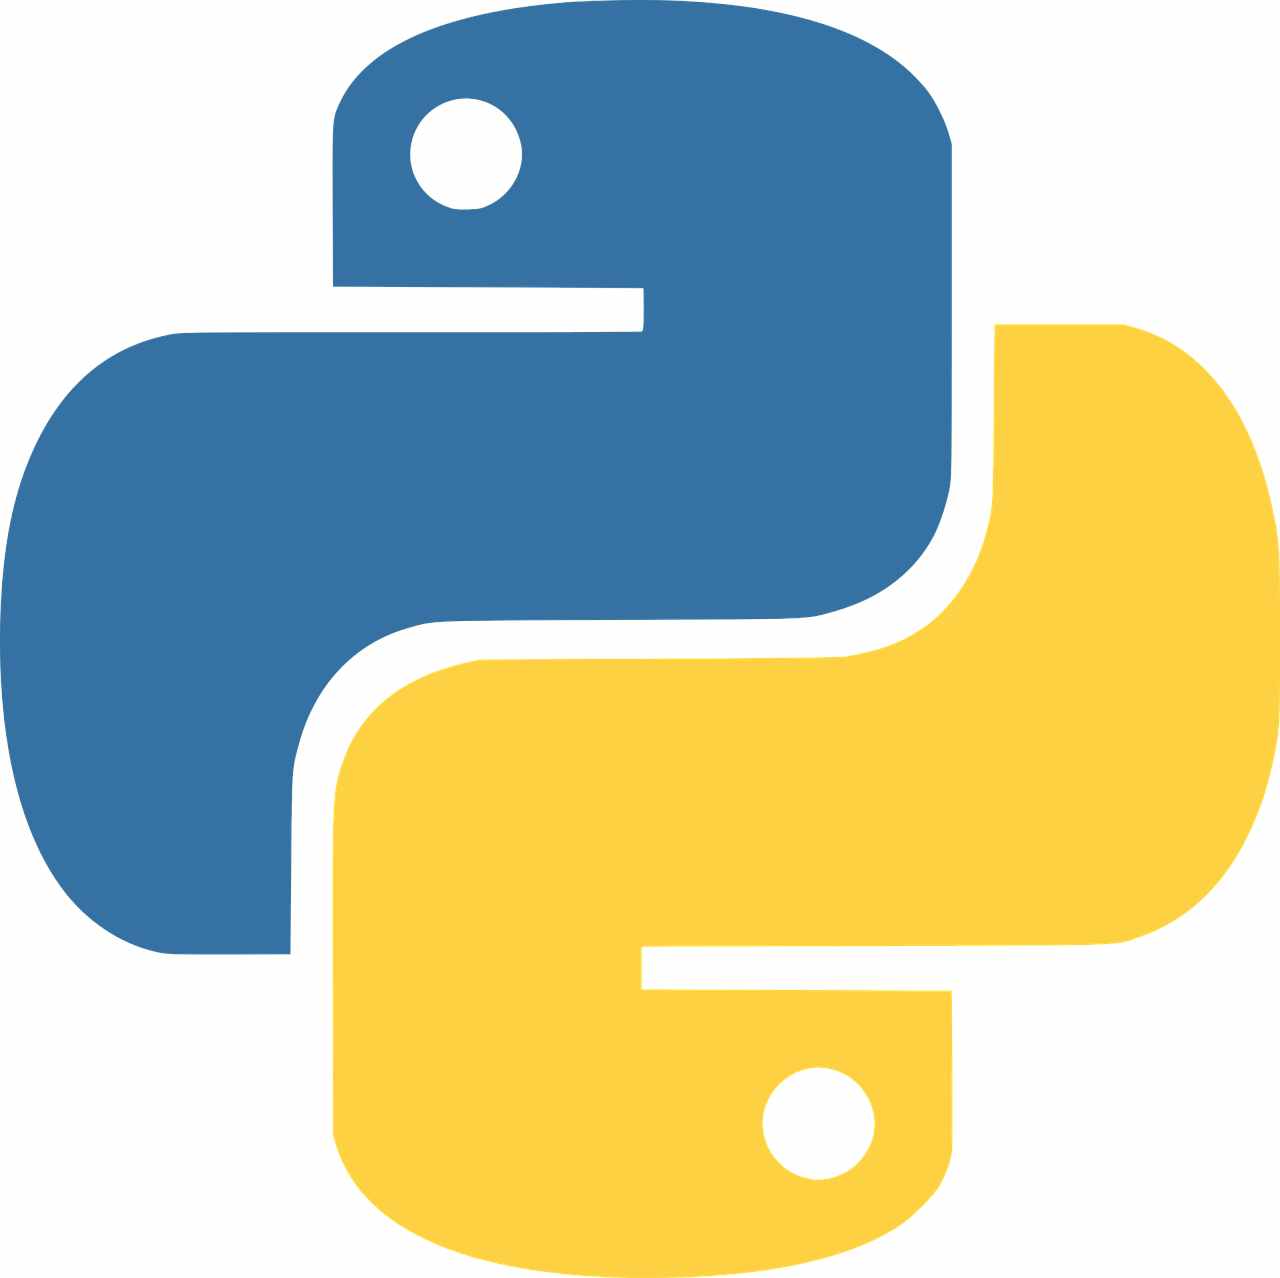 python programming language pdf in hindi download